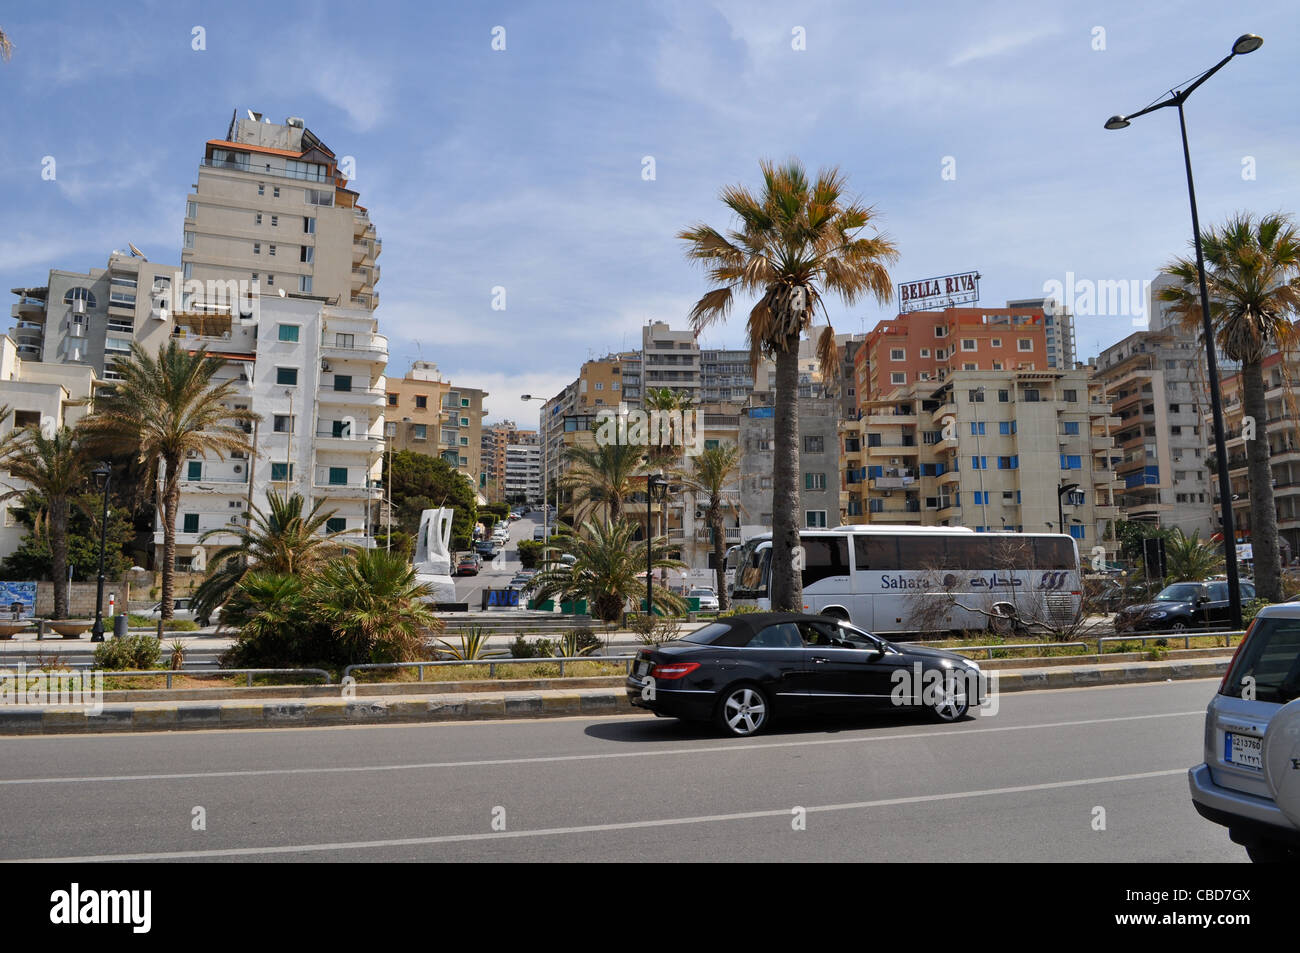 Beirut Corniche, Suite Hotels, Sunni Beirut, Libanon im Sommer des Friedens. Israelische Überflüge nach 2006 34-Tage-Krieg fortgesetzt. Stockfoto